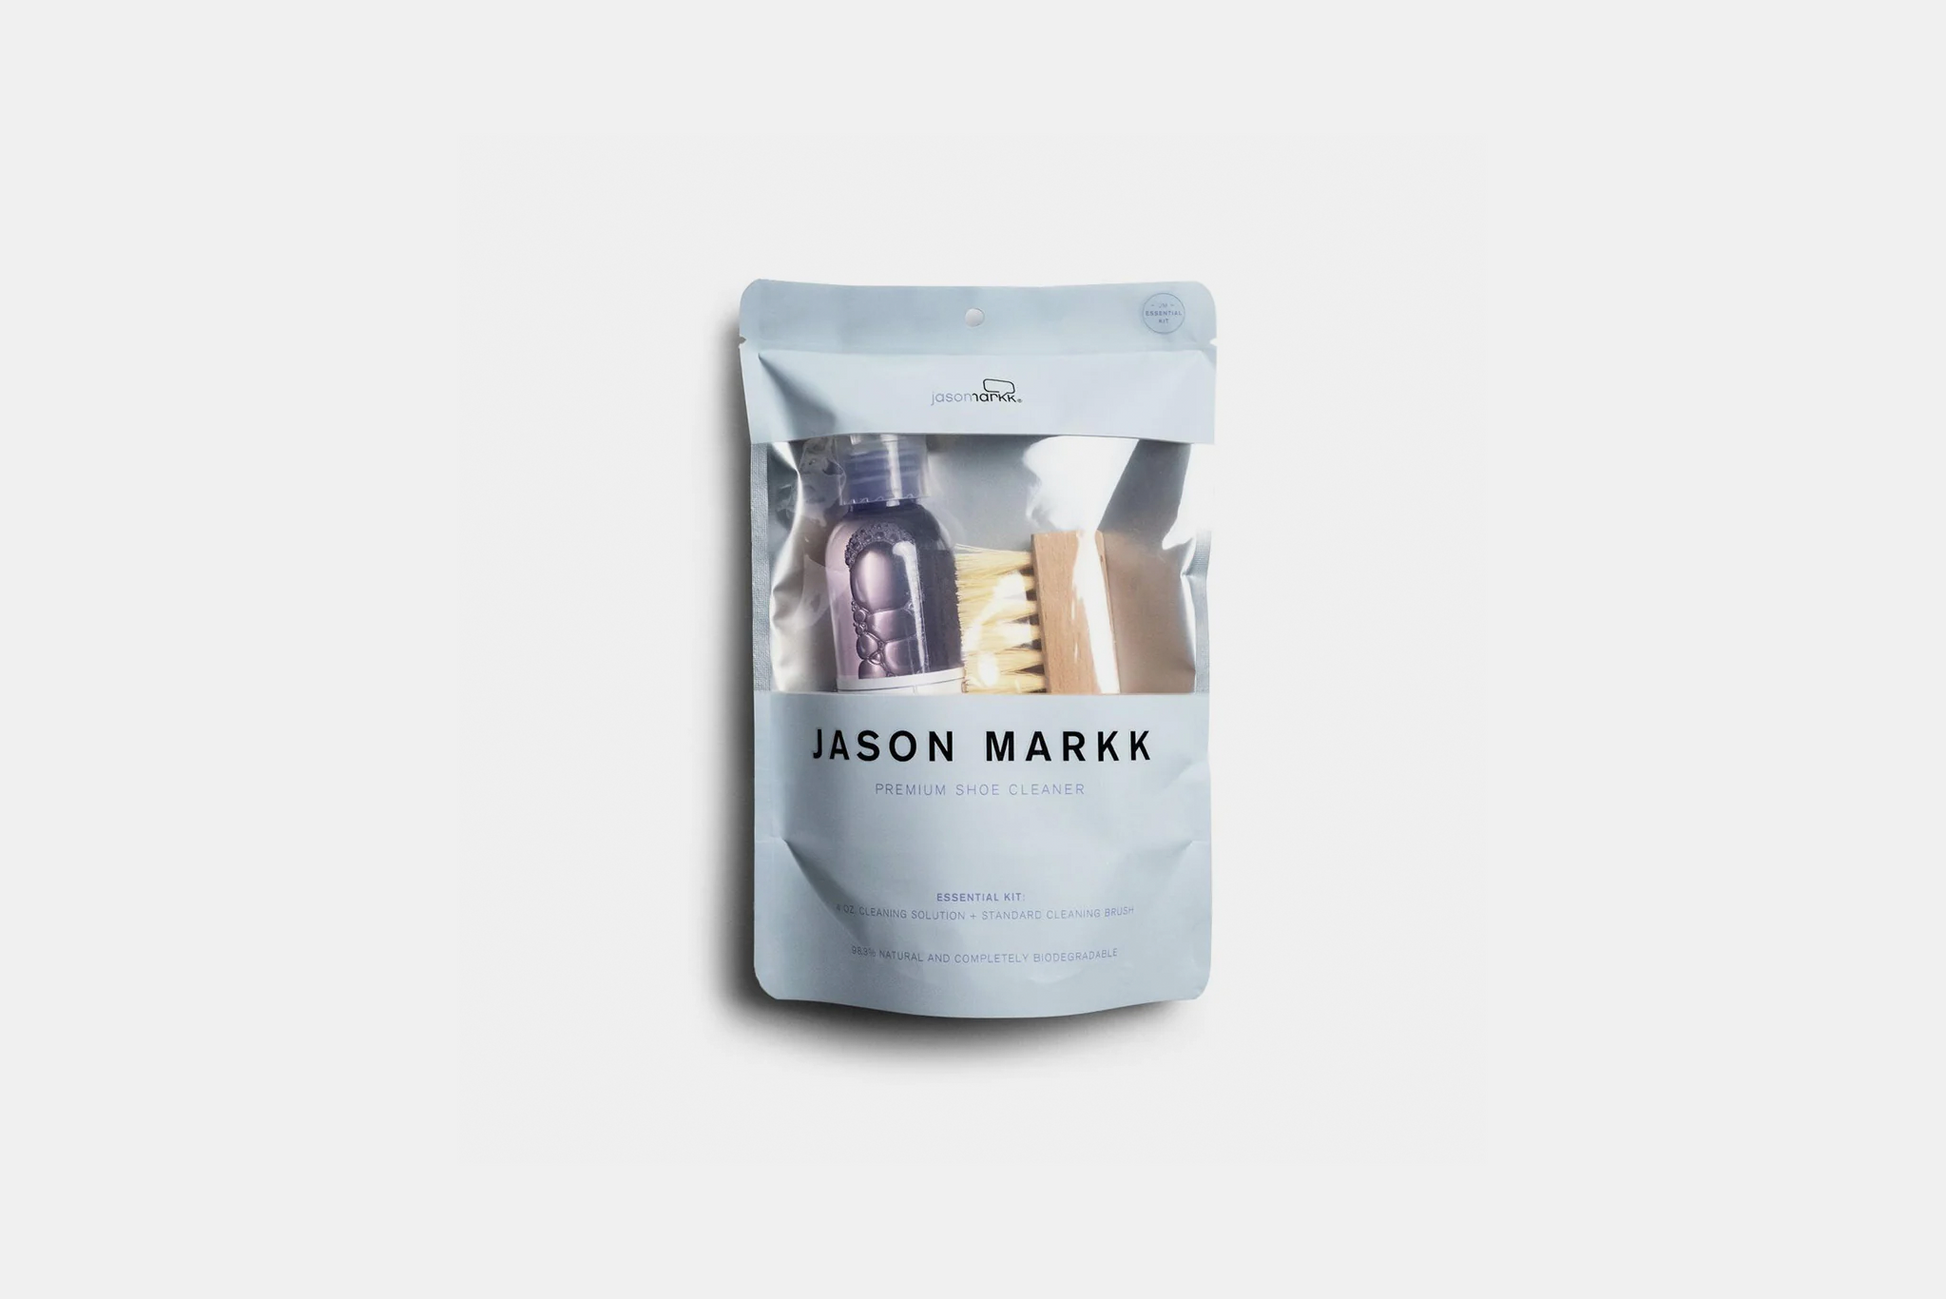 Jason Markk Shoe Cleaner Kit